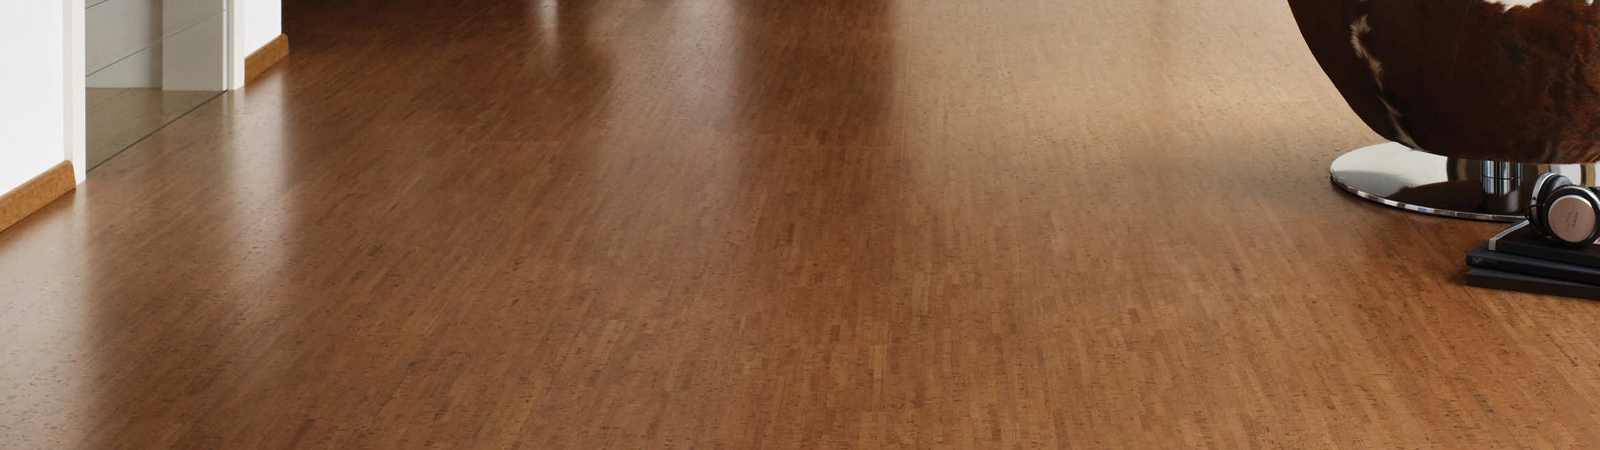 Cork Flooring Planks & Tiles